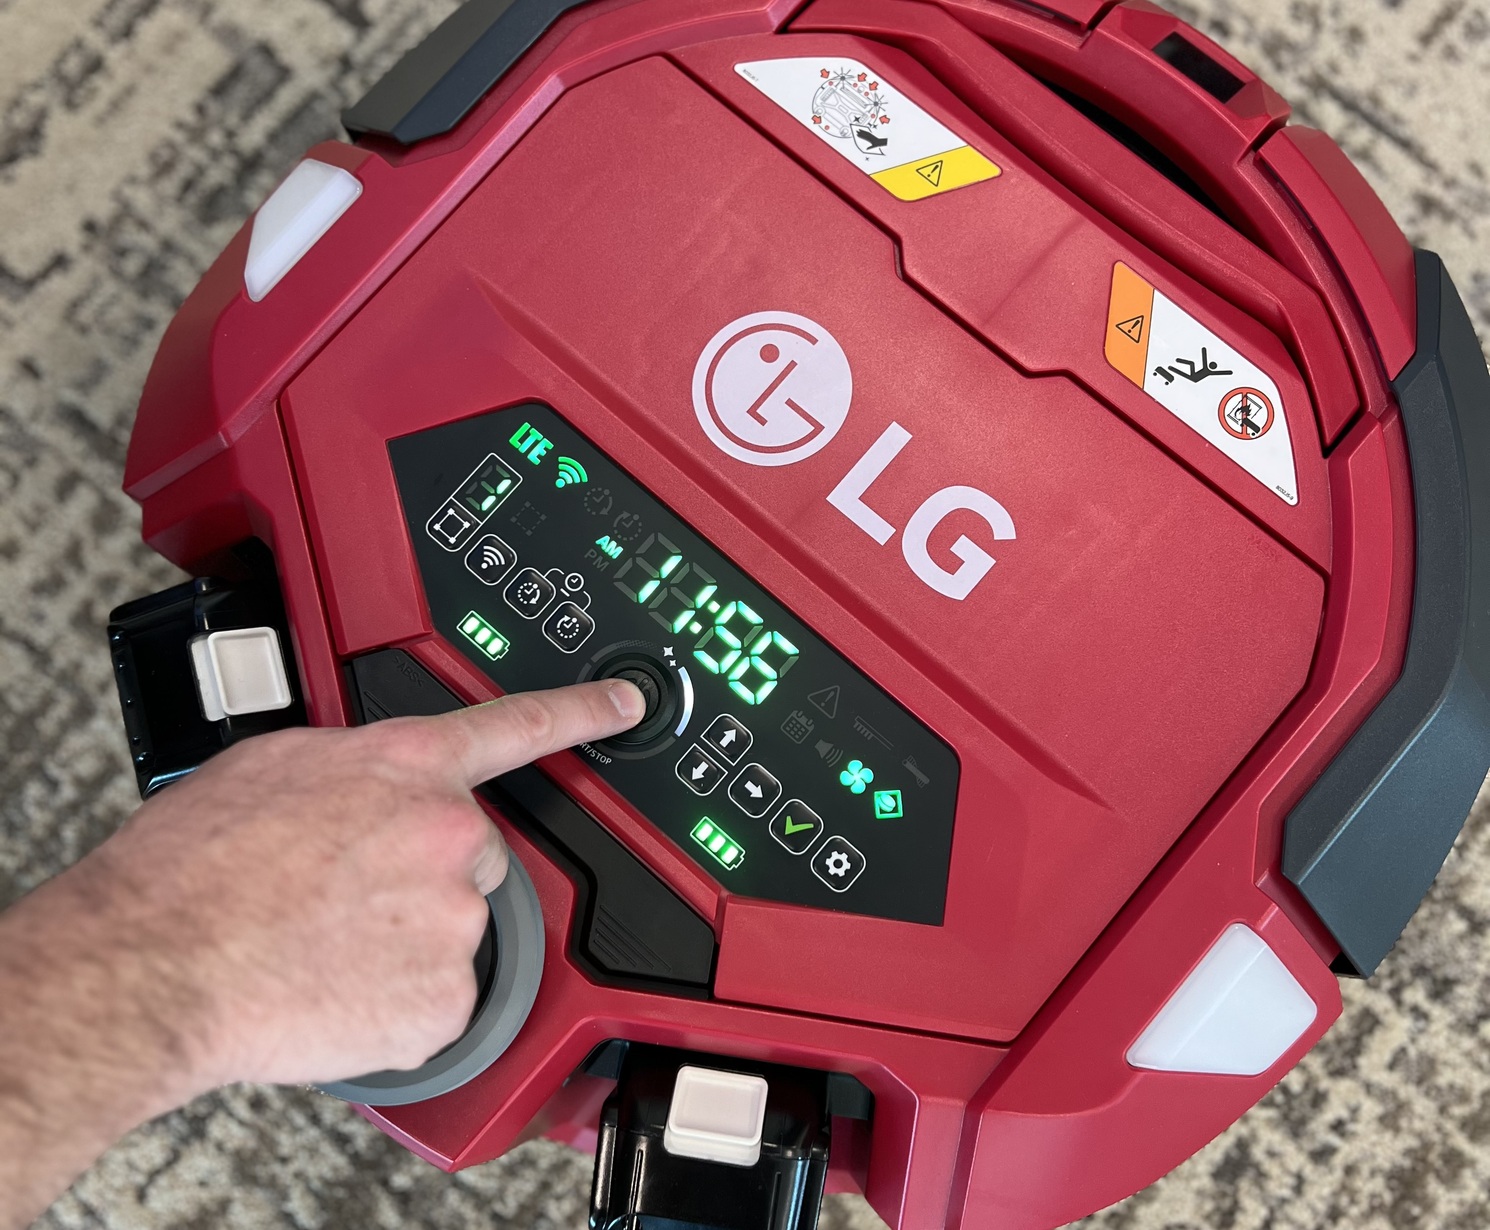 LG Robot Vacuum